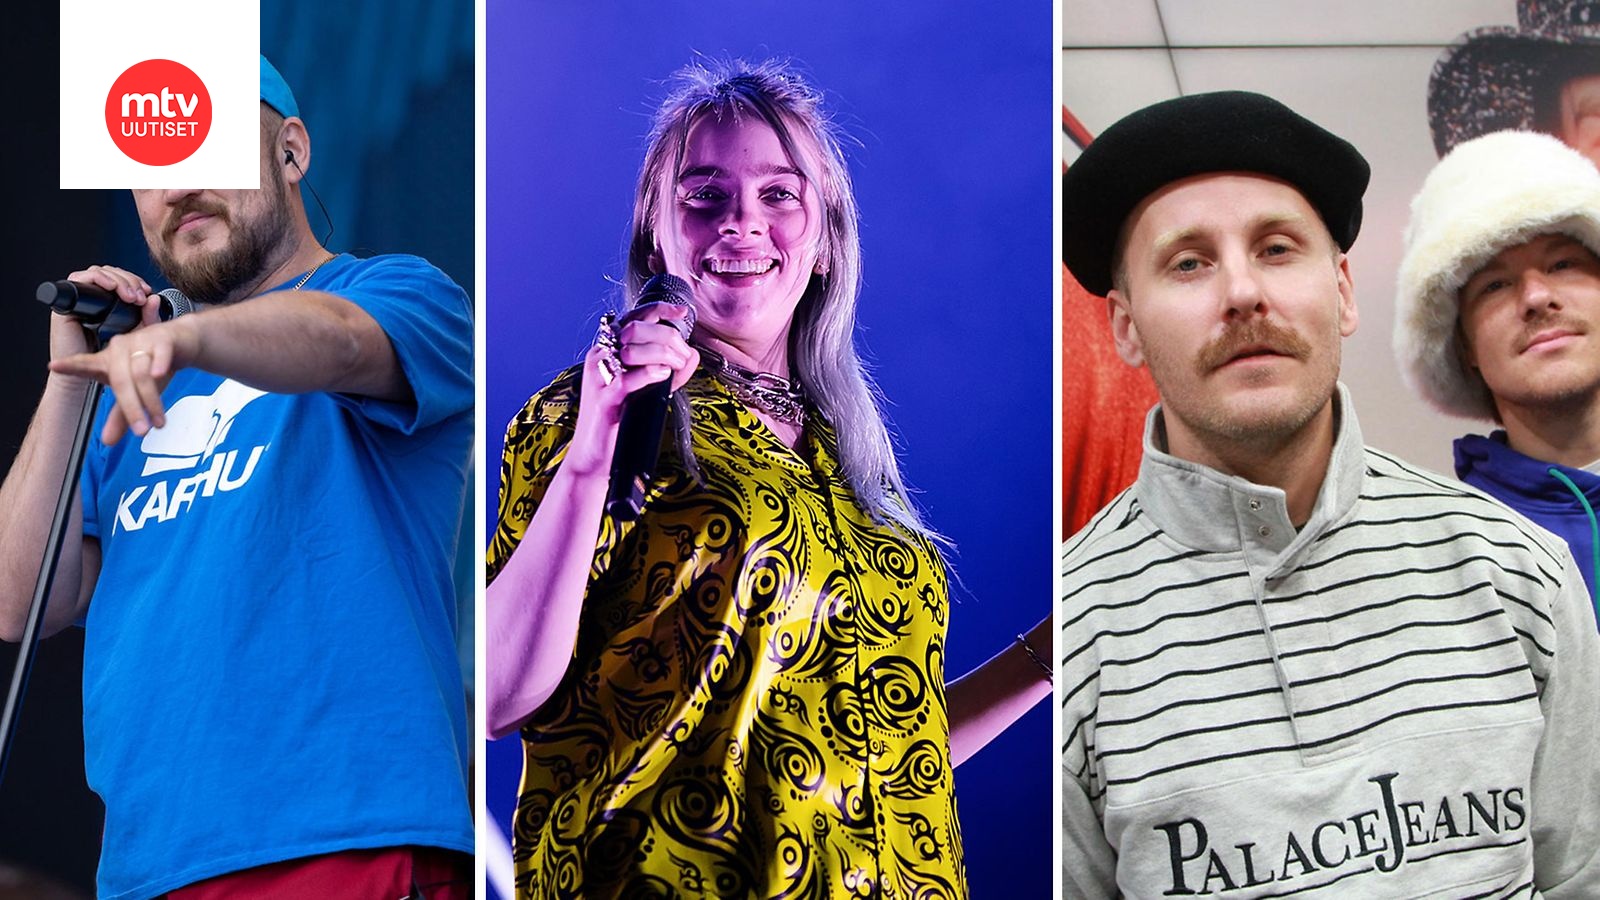 Spotifyn lista julki – tässä ovat vuoden 2019 kuunnelluimmat kappaleet ja  artistit Suomessa 